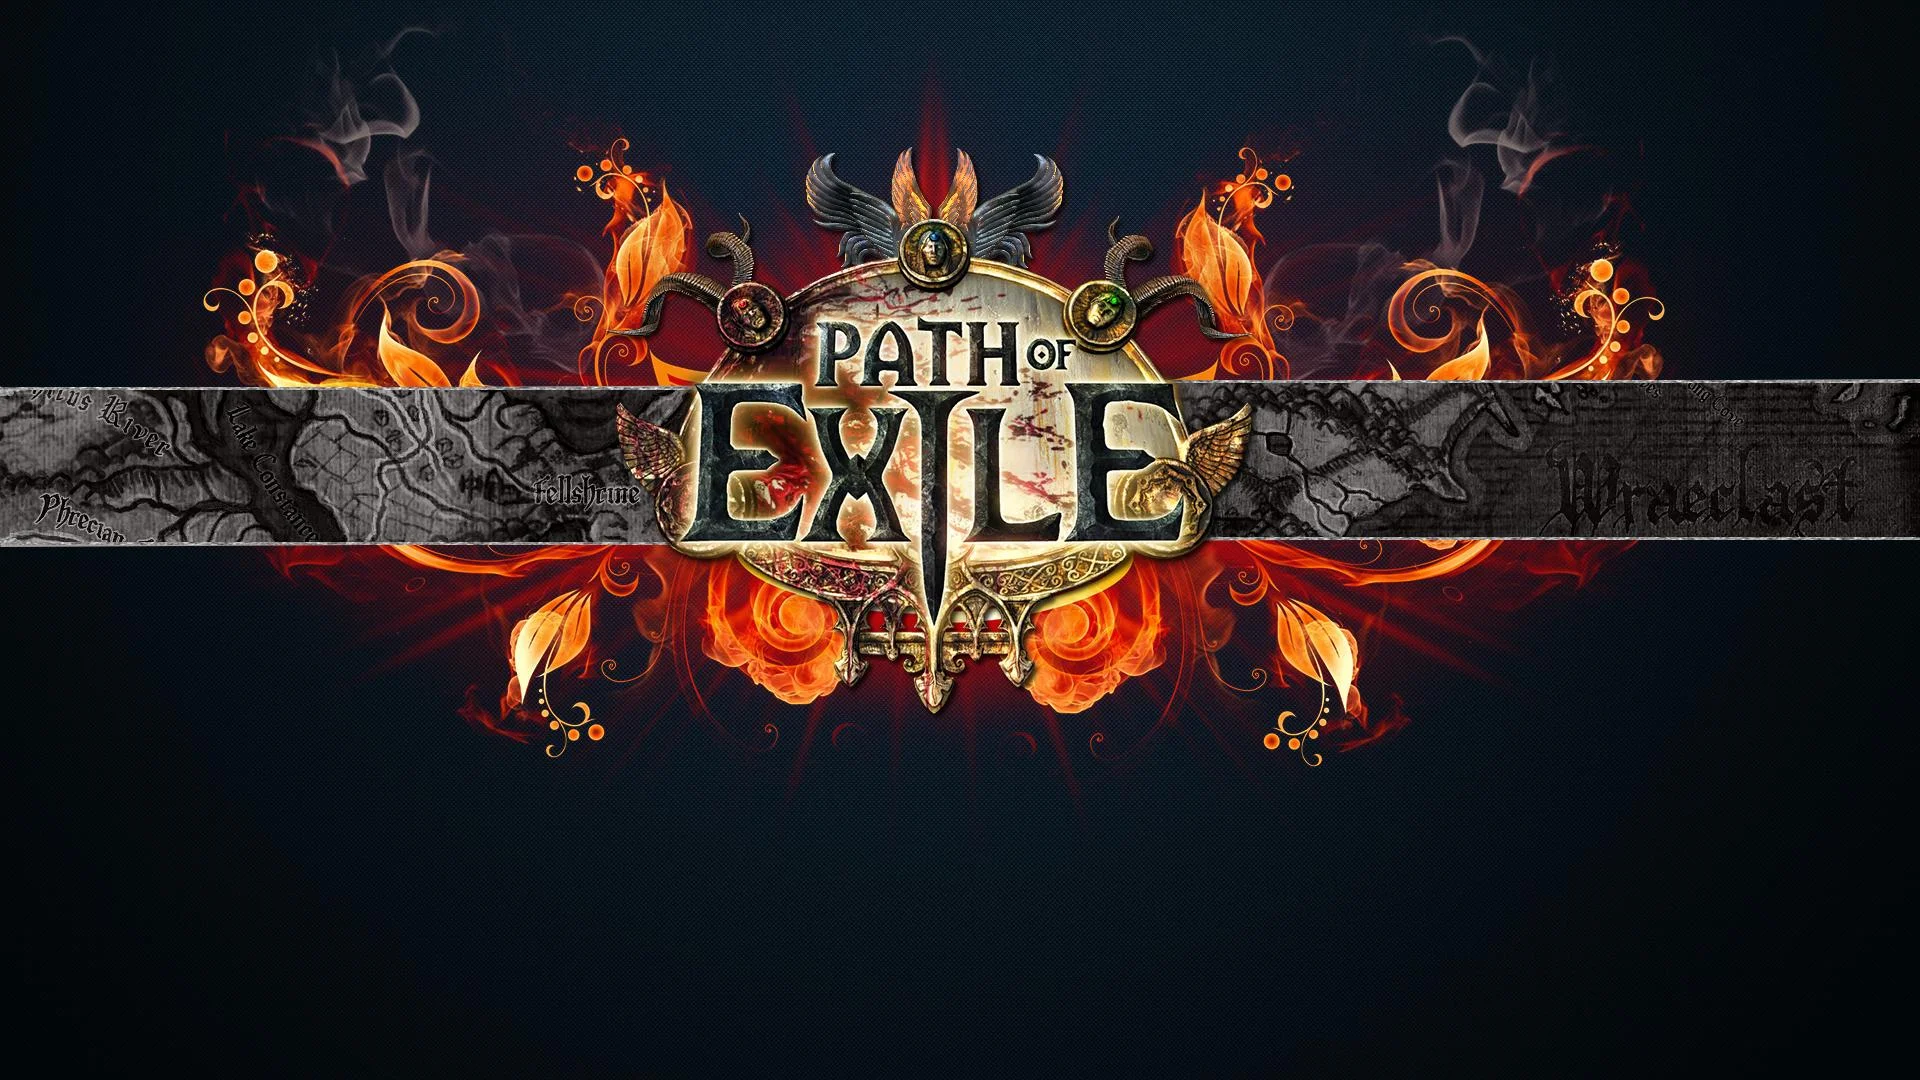 Path of Exile, причудливая смесь Diablo 2 и античной мифологии, выходит в России. Игра, в которой от количества текста и описаний предметов иногда хотелось выть, наконец-таки полностью переведена на русский язык. Мы приняли участие в закрытом бета-тестировании и готовы поделиться нашими впечатлениями. 